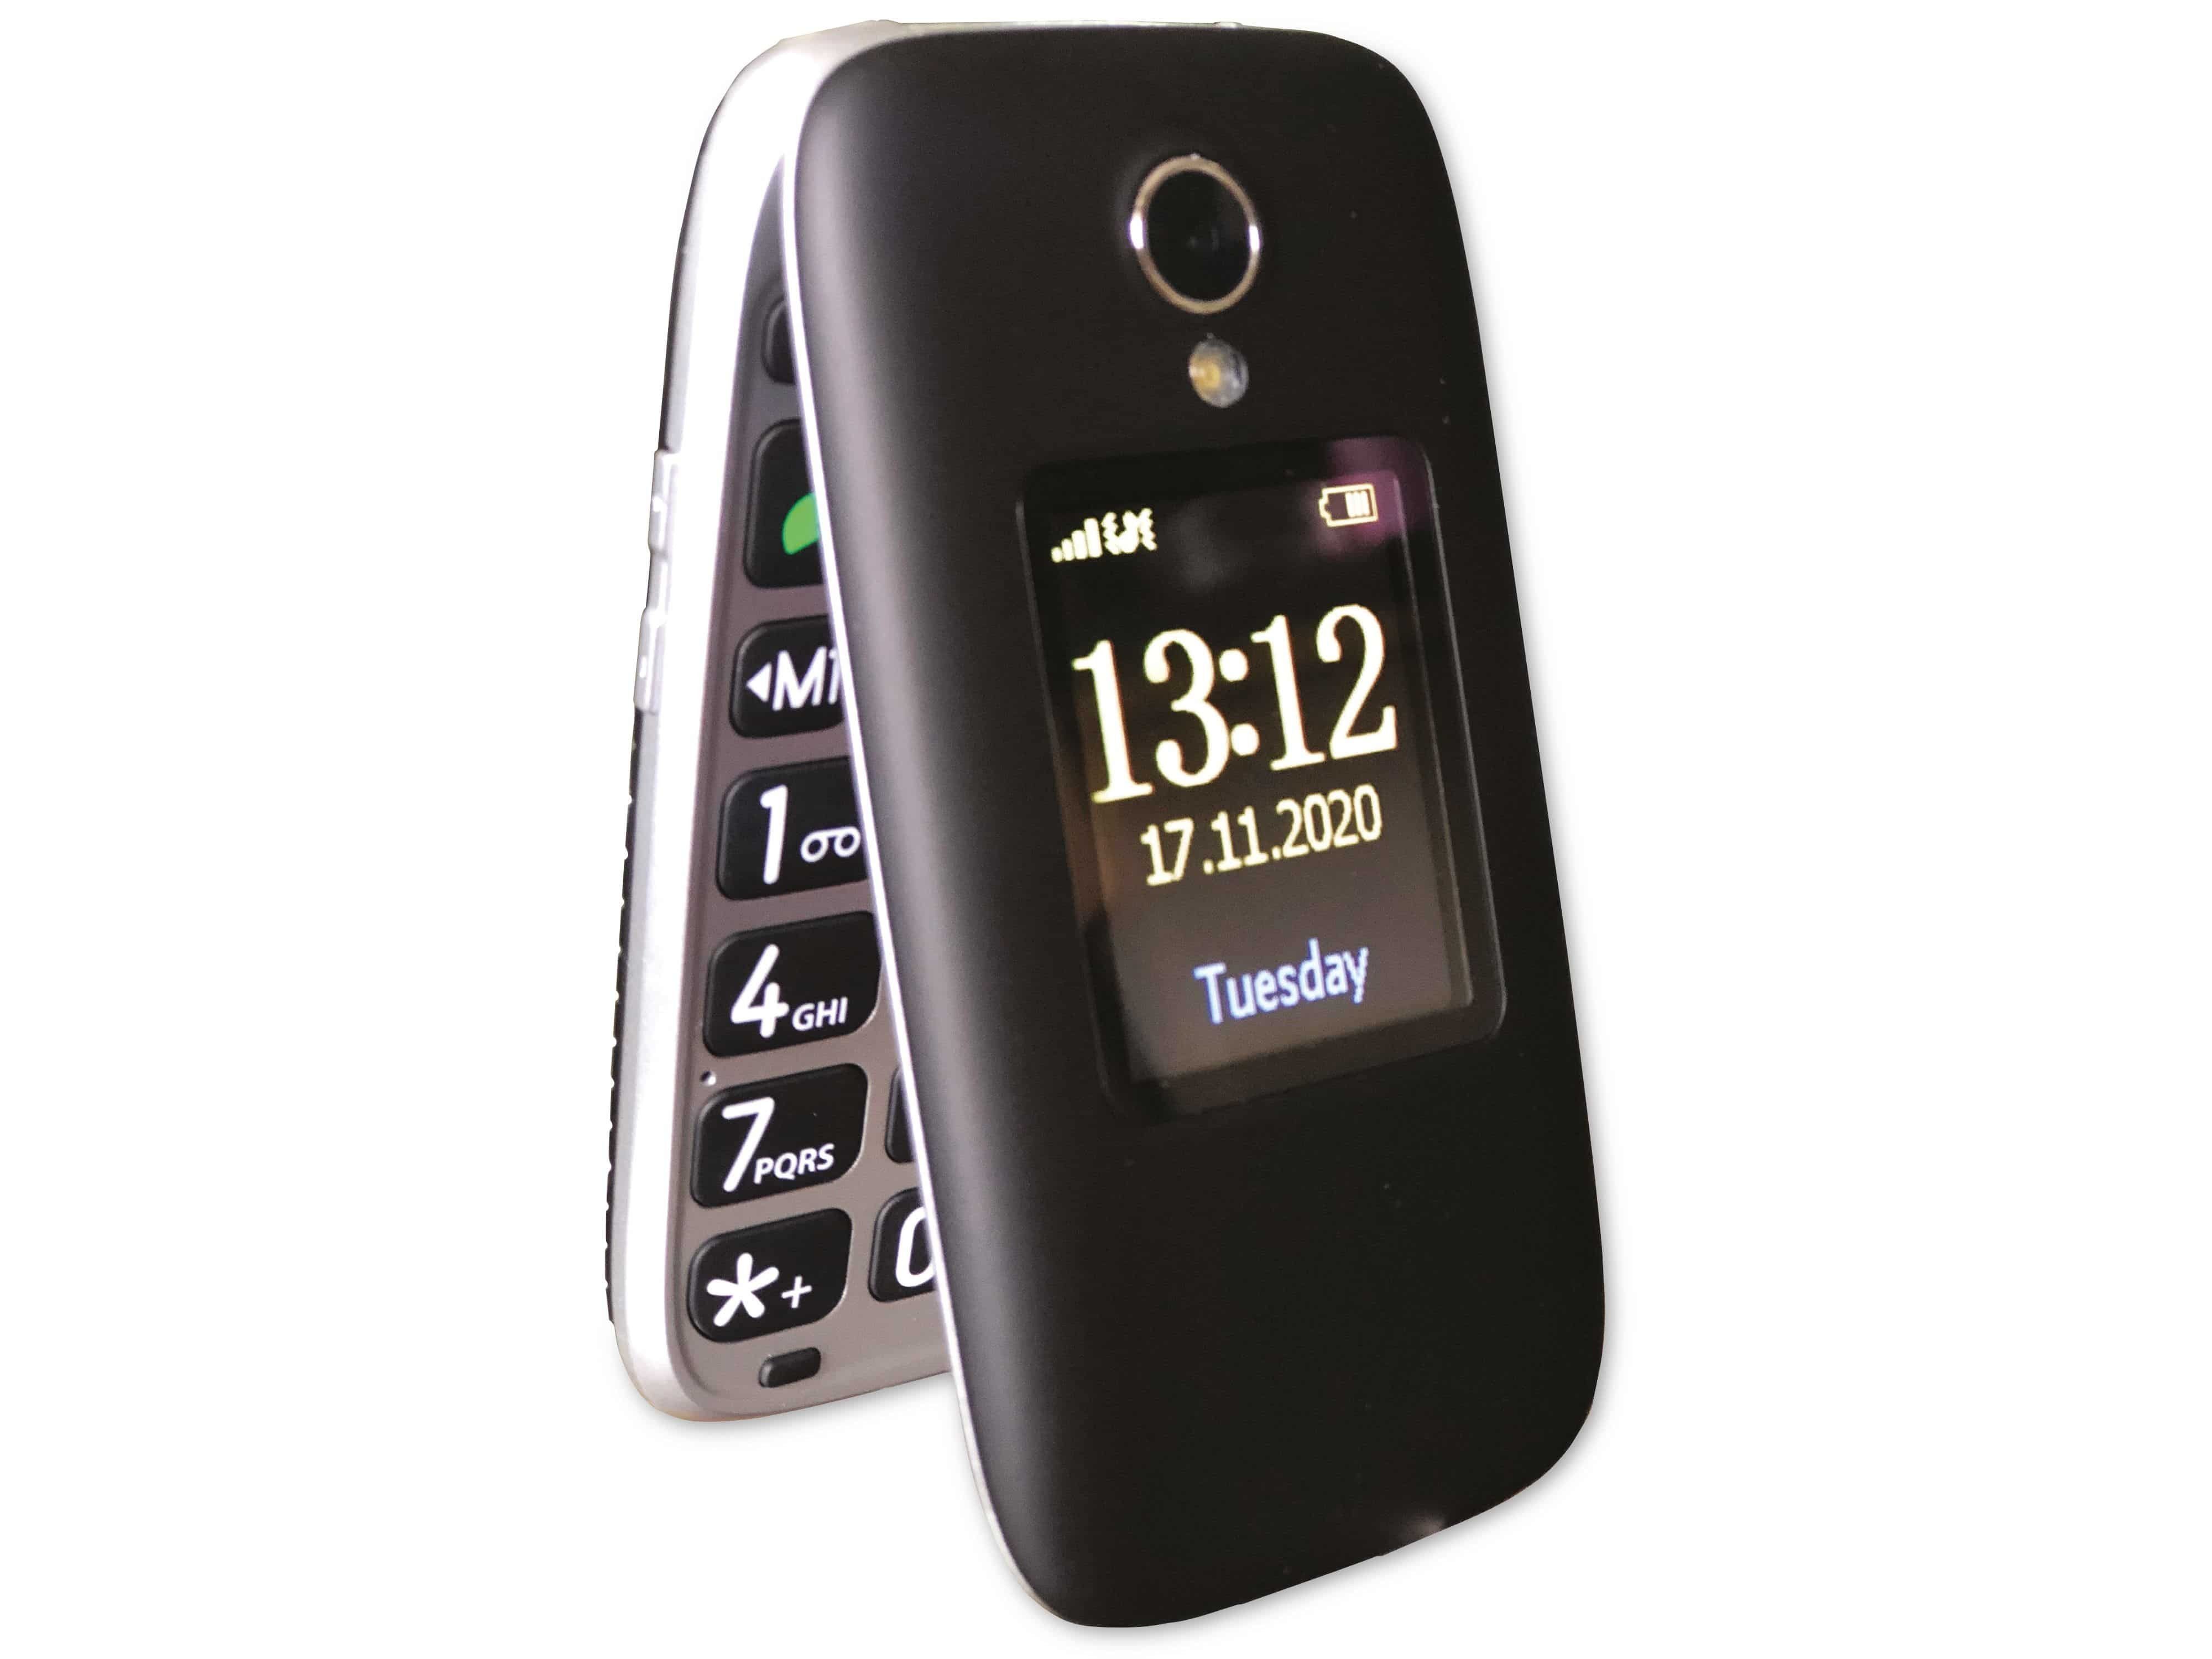 TELEFUNKEN Handy Telefunken S560, Handy schwarz